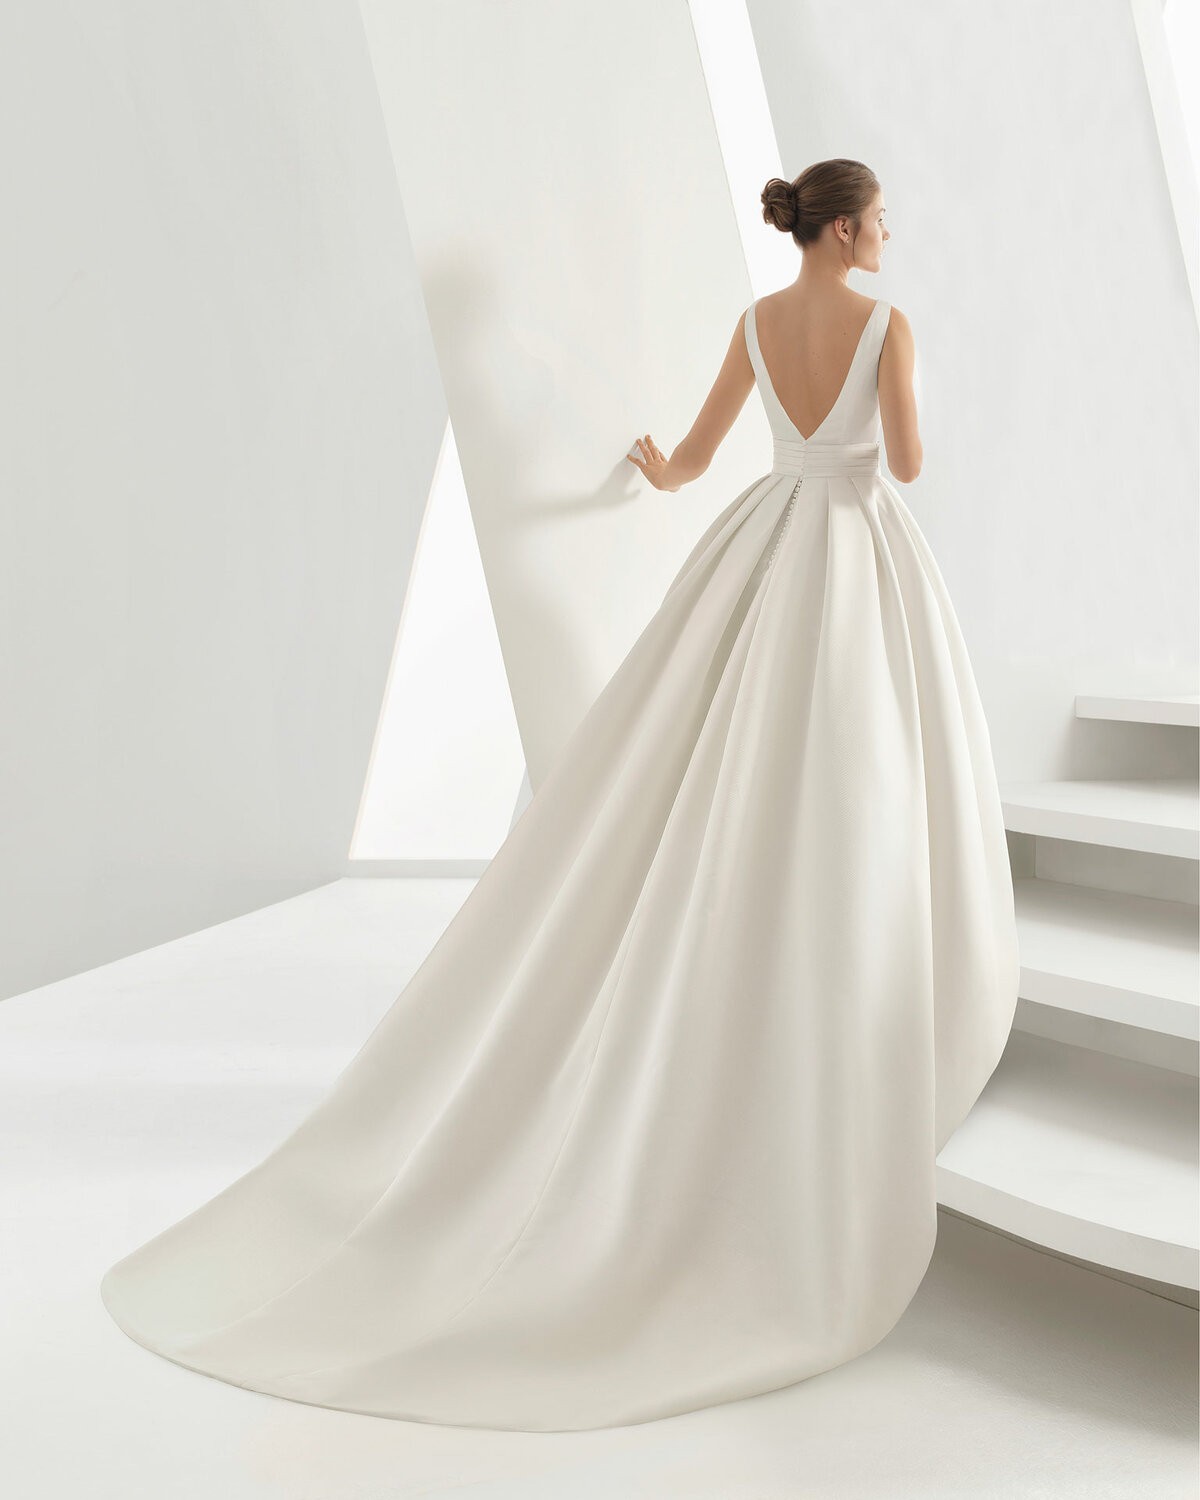 OPULENTO - abito da sposa collezione 2020 - Rosa Clarà